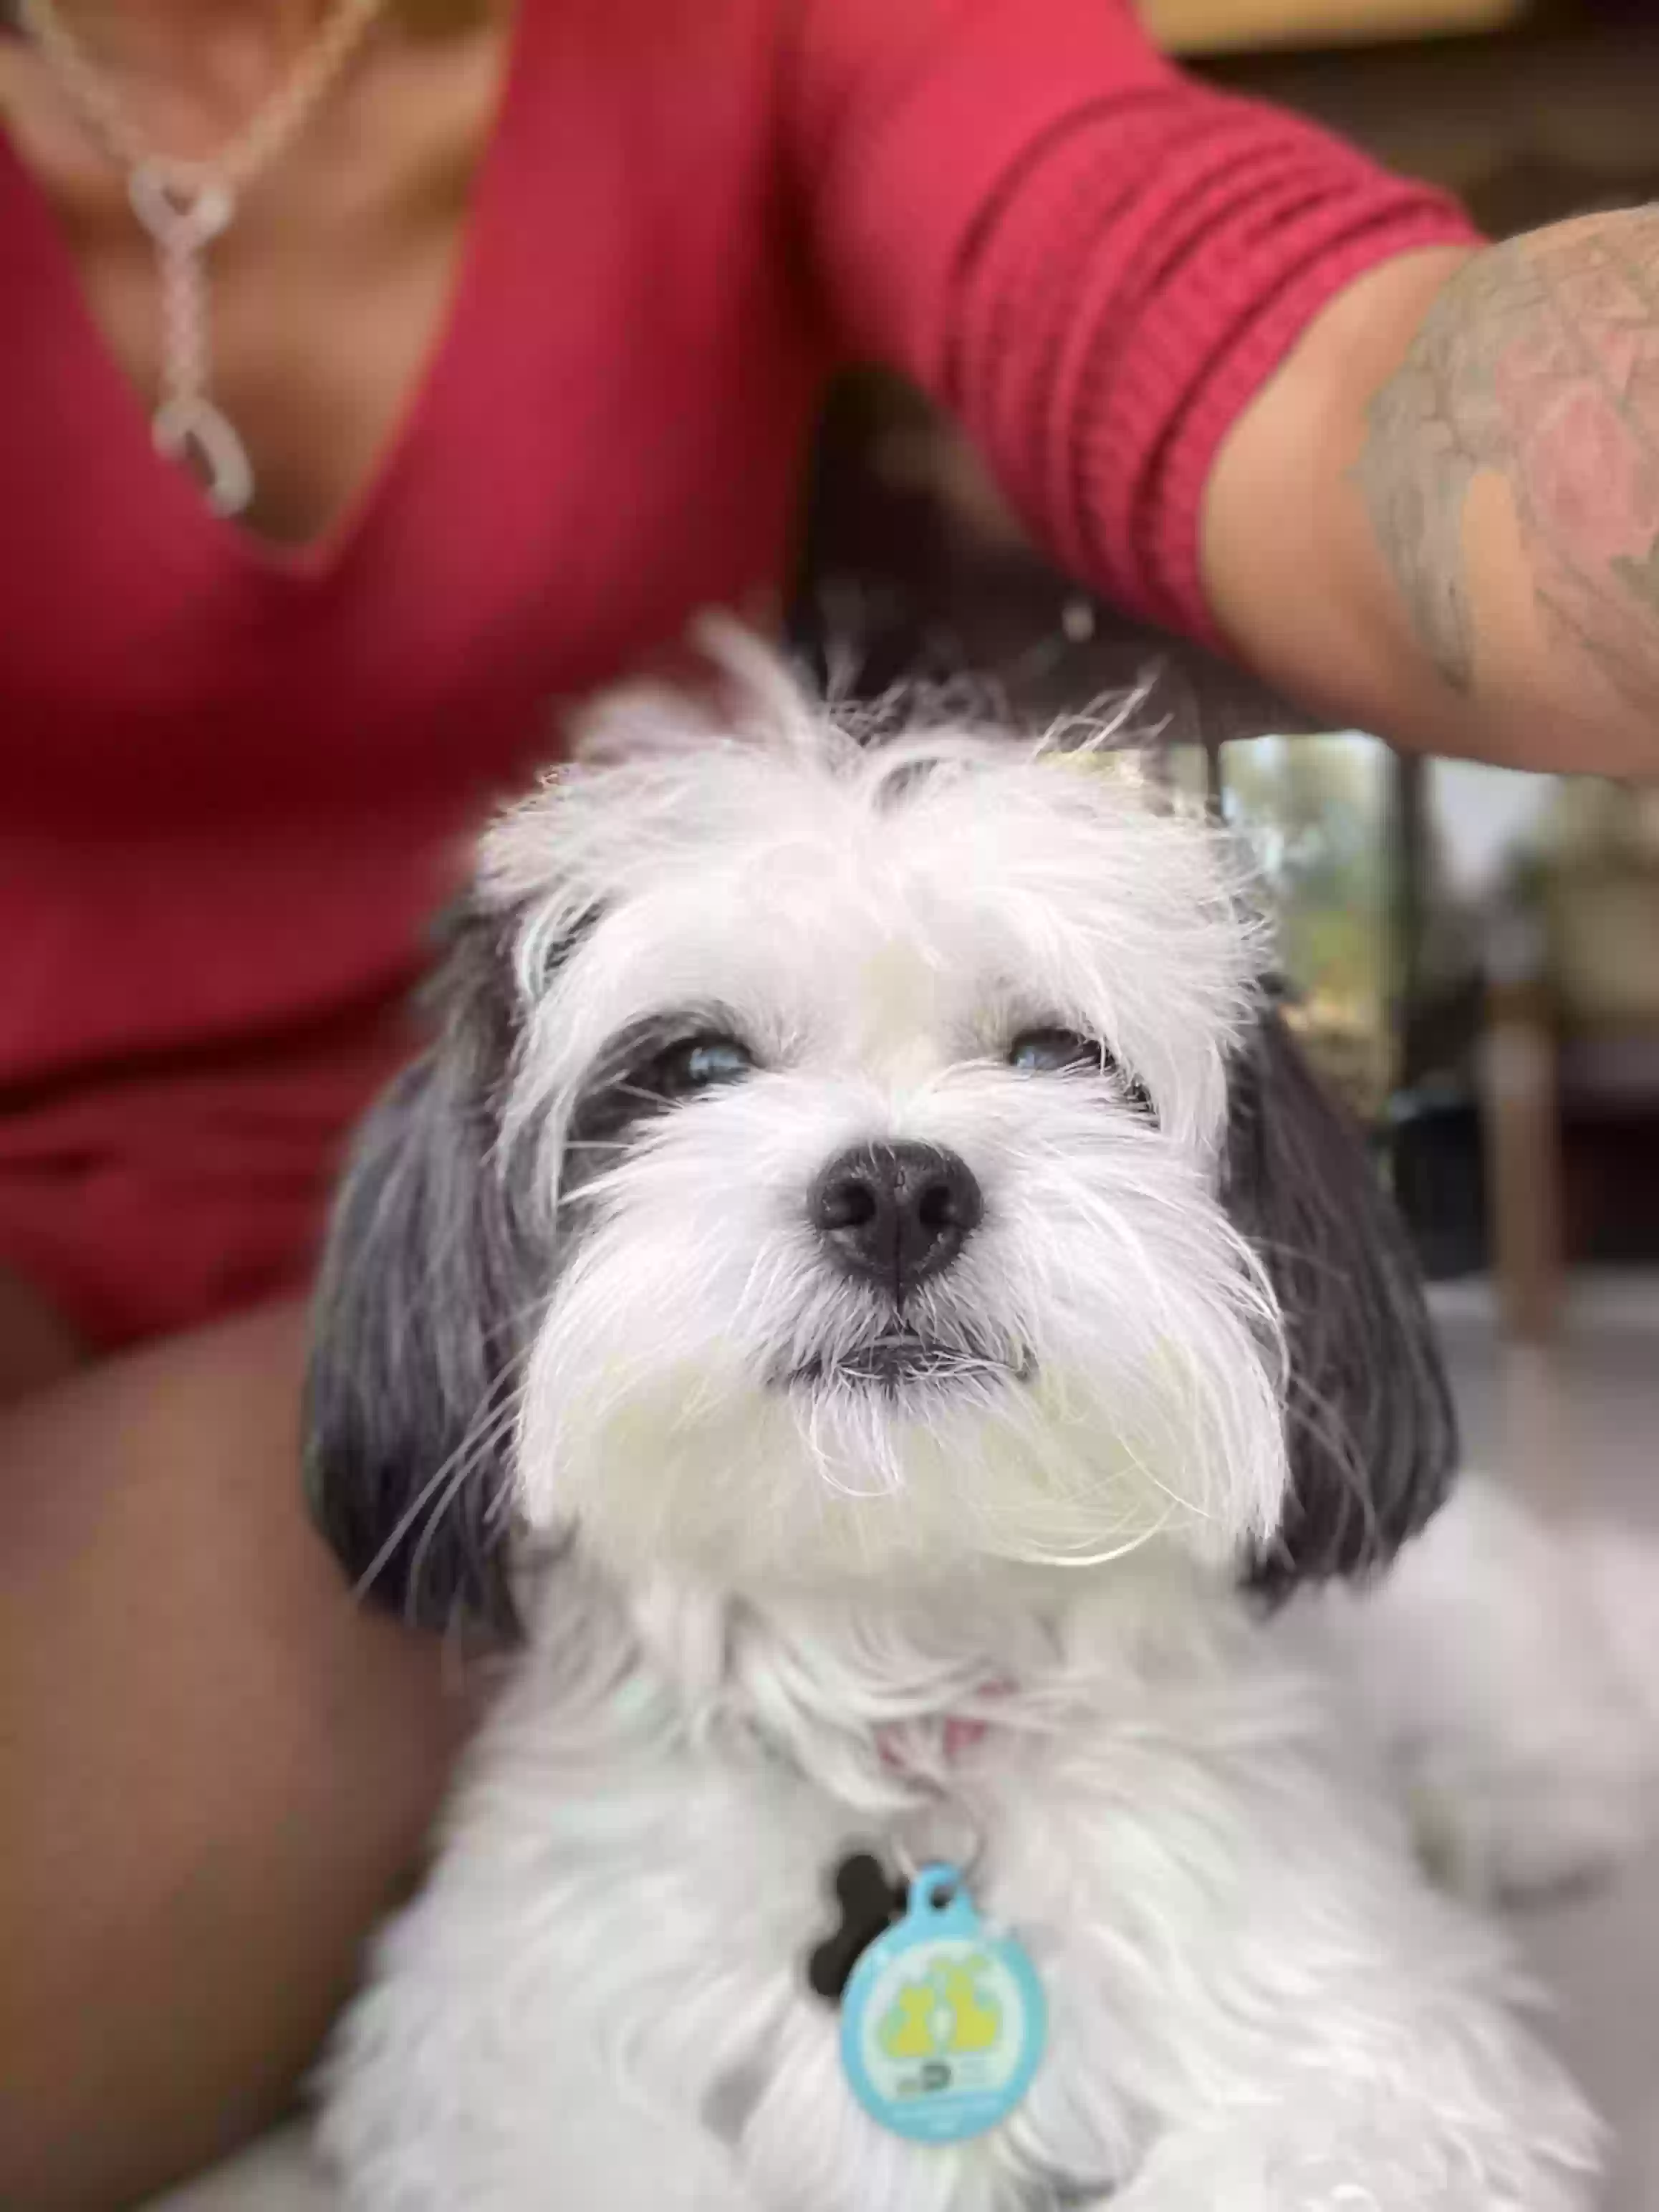 adoptable Dog in Atlanta,GA named Kenzo